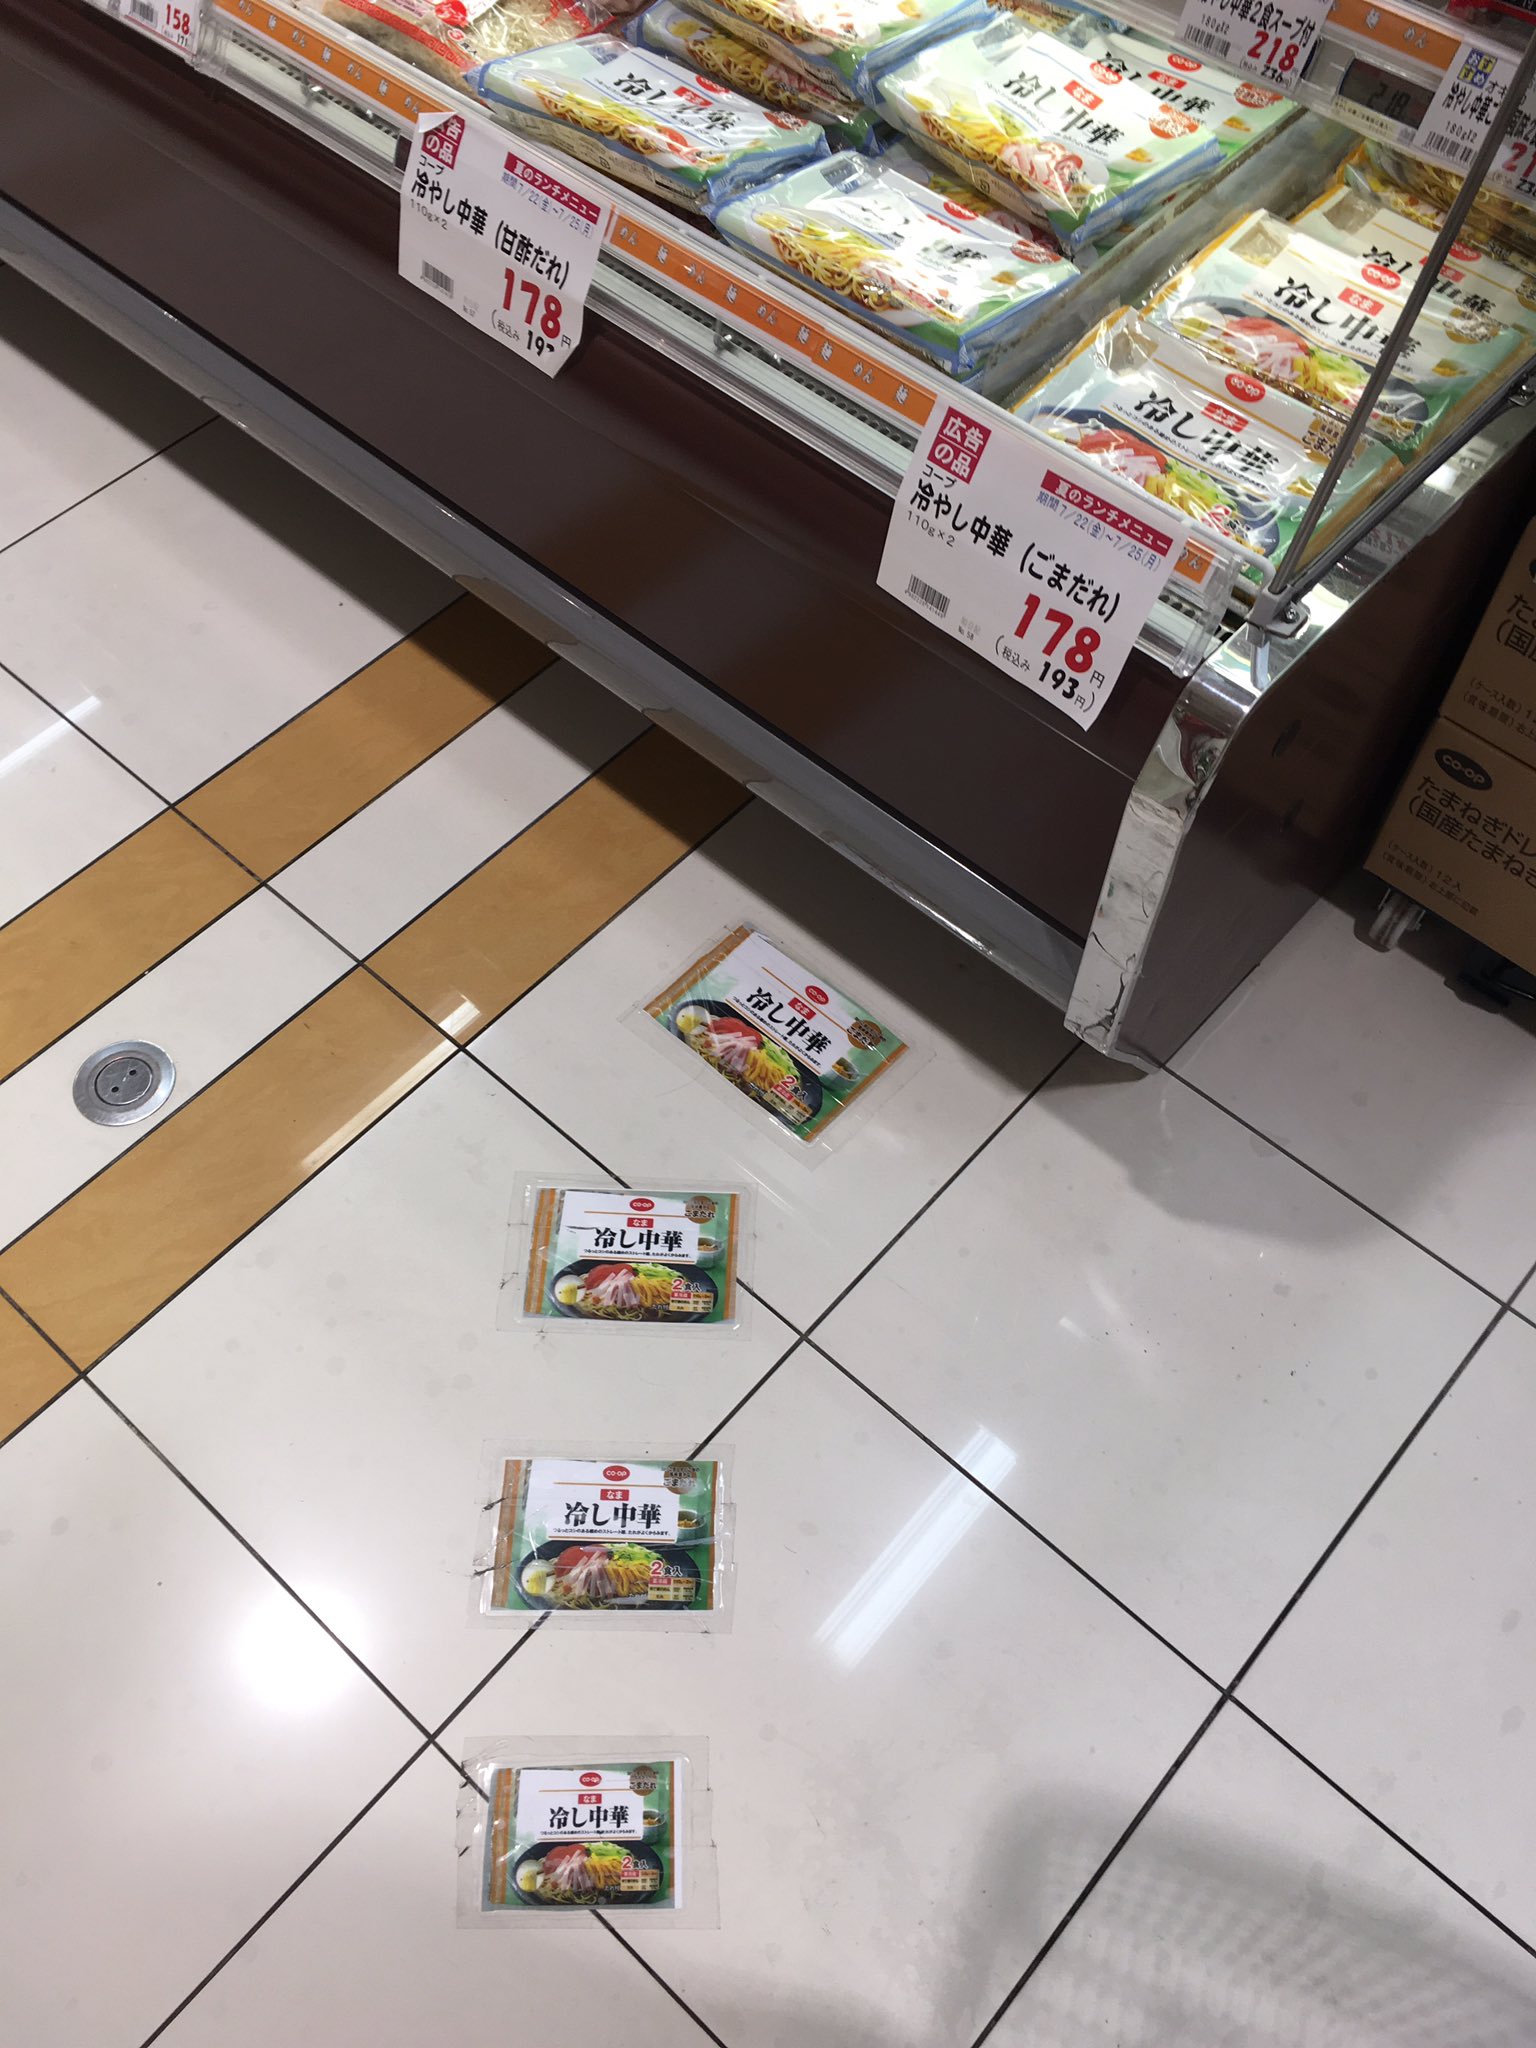 冷やし中華へ誘導するスーパーのおもしろい広告 笑